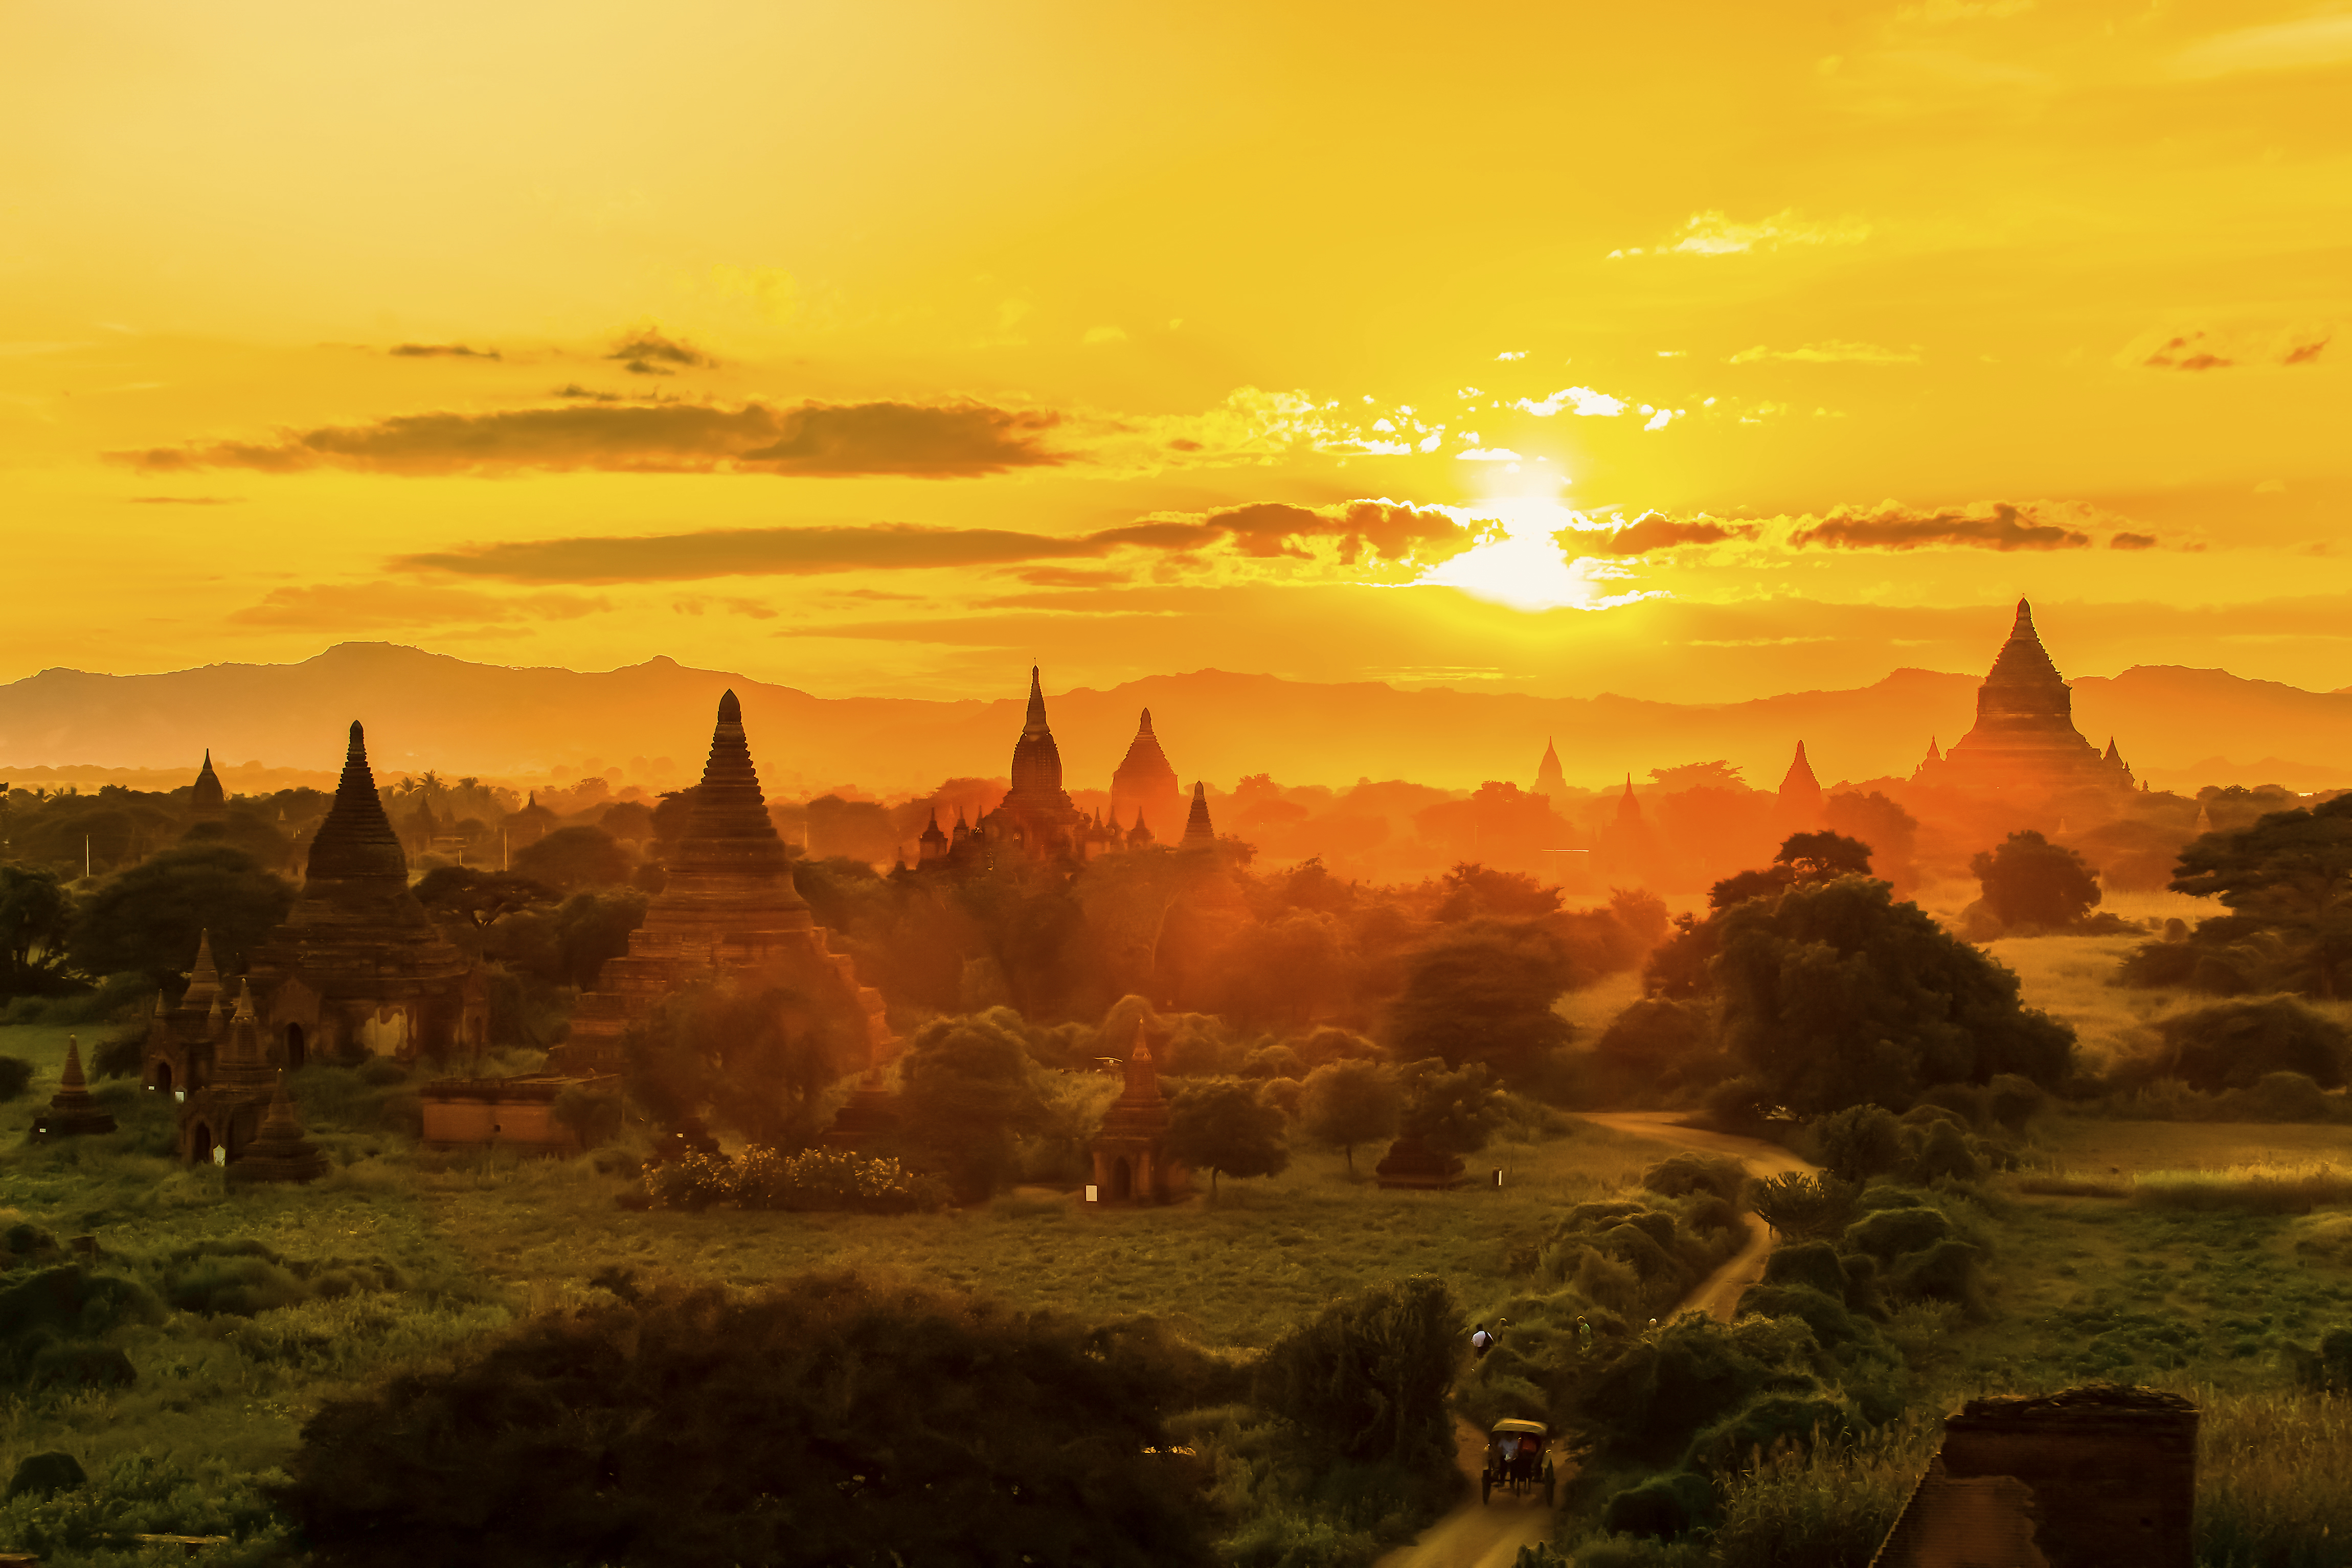 10 สิ่งที่ต้องรู้และควรทำเมื่อท่องเที่ยวในพม่า คำแนะนำดี ๆ จากนักเดินทาง -  Skyscanner Thailand